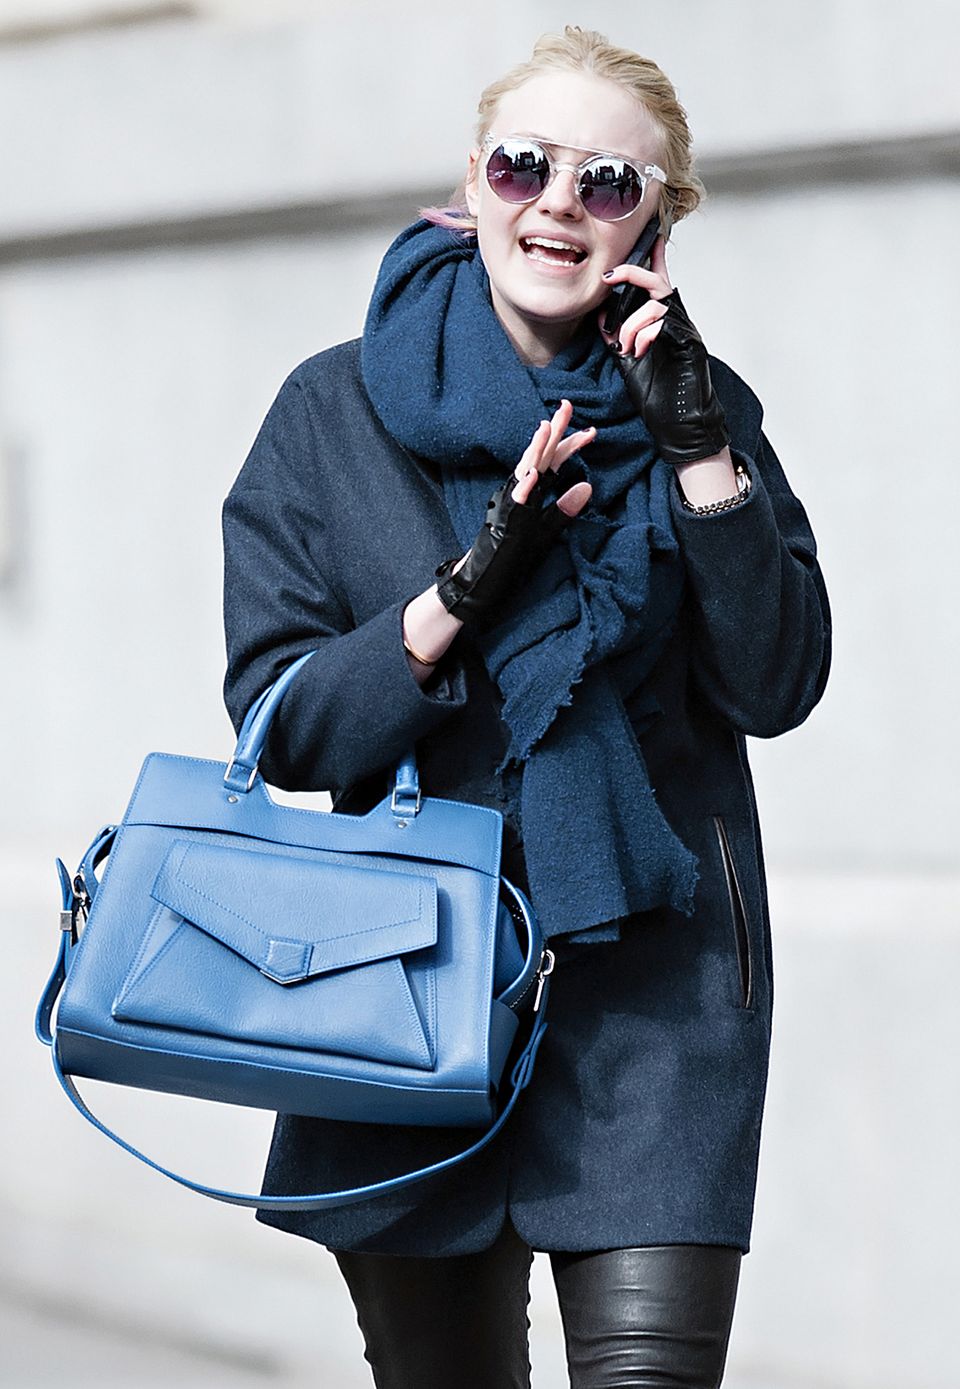 Schauspielerin und Teilzeit-Studentin Dakota Fanning setzt bei einem Spaziergang durch New York auf eine Henkeltasche in Blau. Ob sie darin ihre Vorlesungsnotizen verstaut?